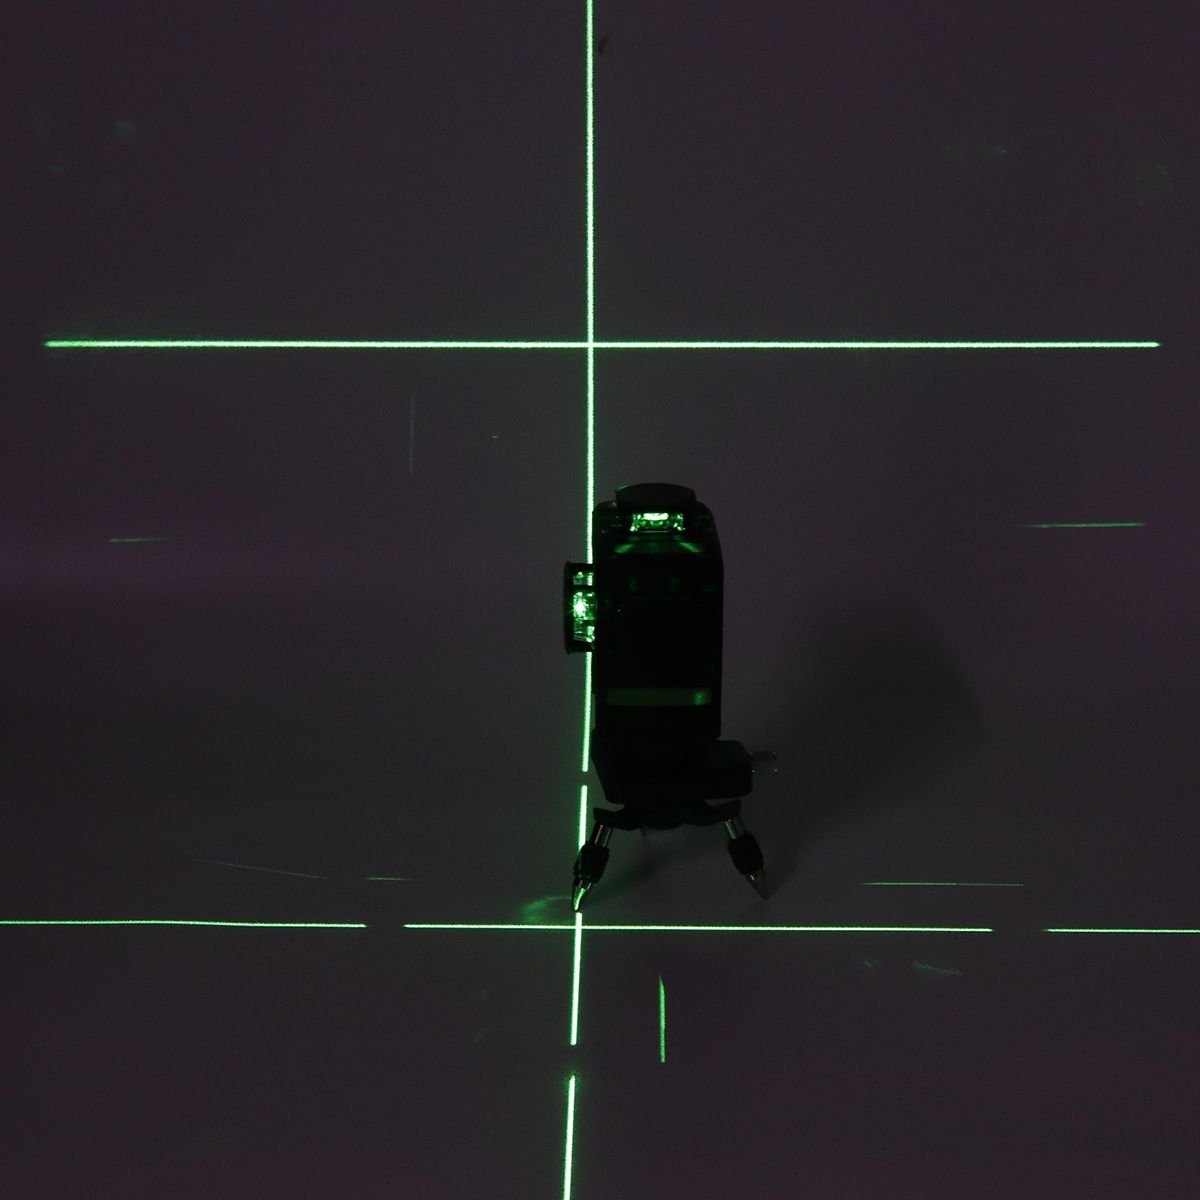 12-Line-Laser-Level-360deg-3D-Cross-Beam-Self-Leveling-Measure-Tool-Kit-with-Bag-1571271